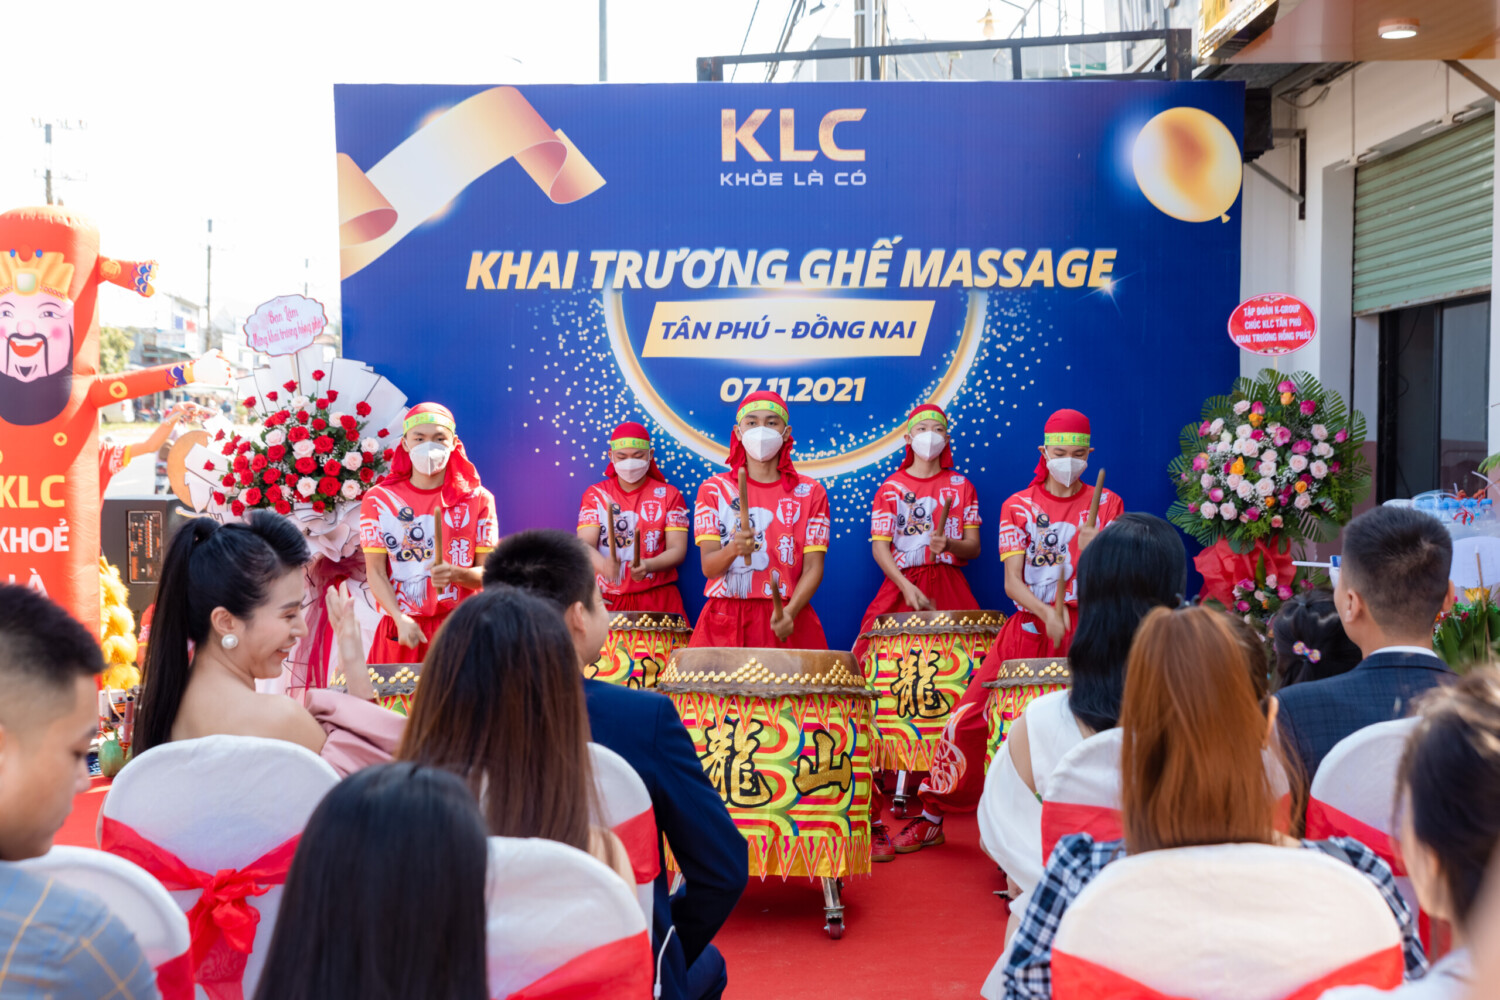 Ghế massage KLC khai trương showroom mới 03